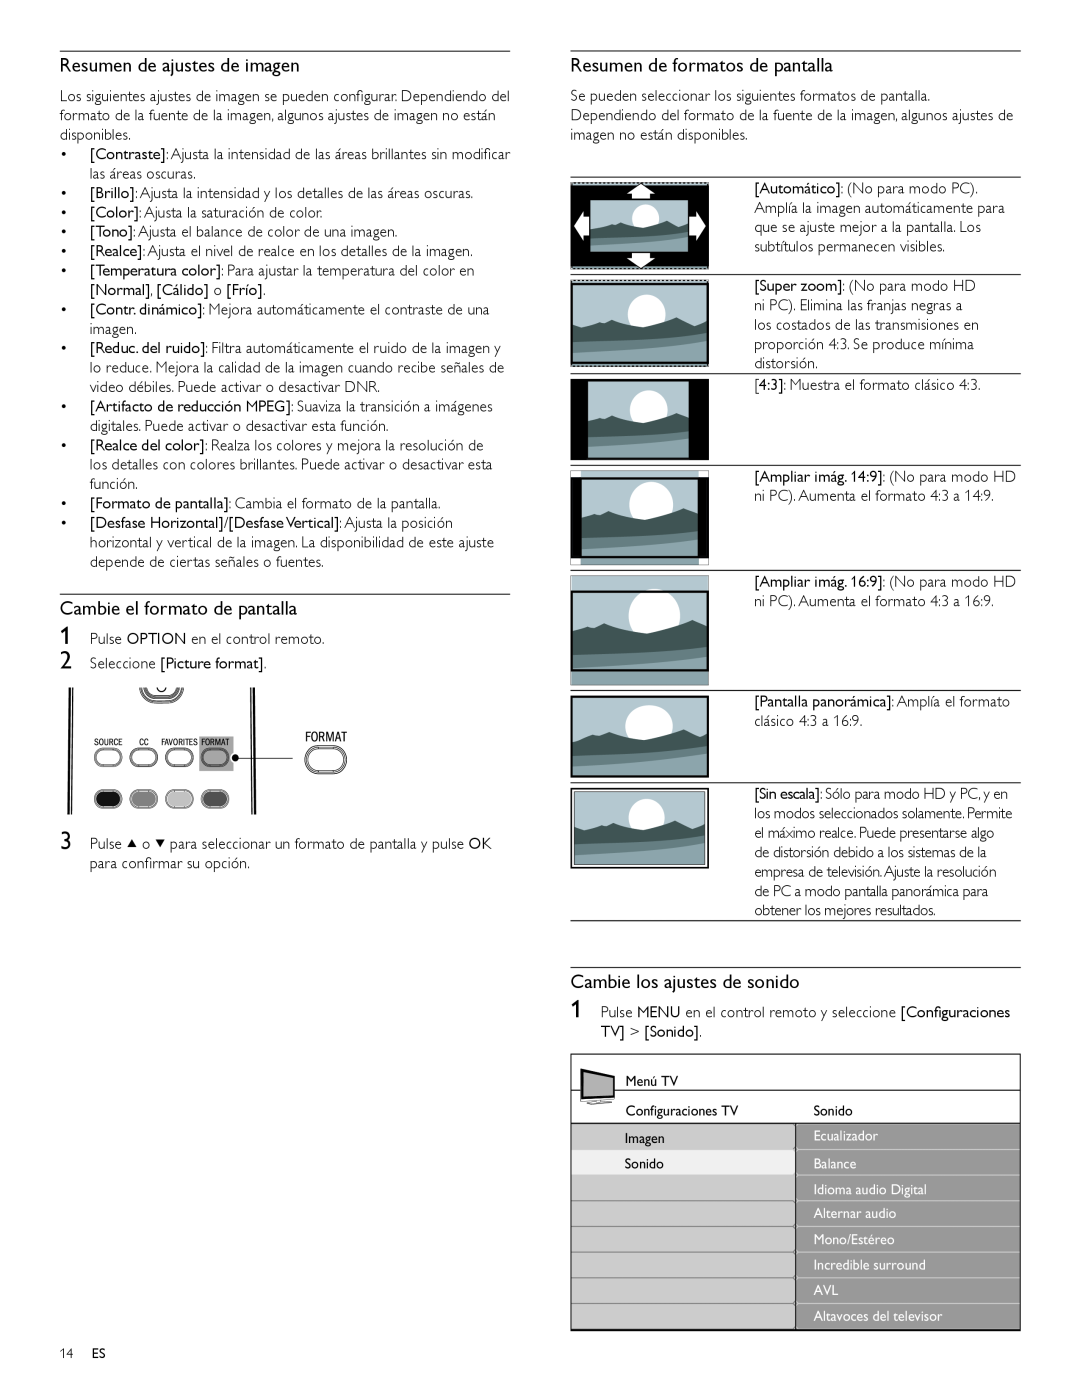 Magnavox 47MF439B user manual Resumen de ajustes de imagen, Cambie el formato de pantalla, Resumen de formatos de pantalla 